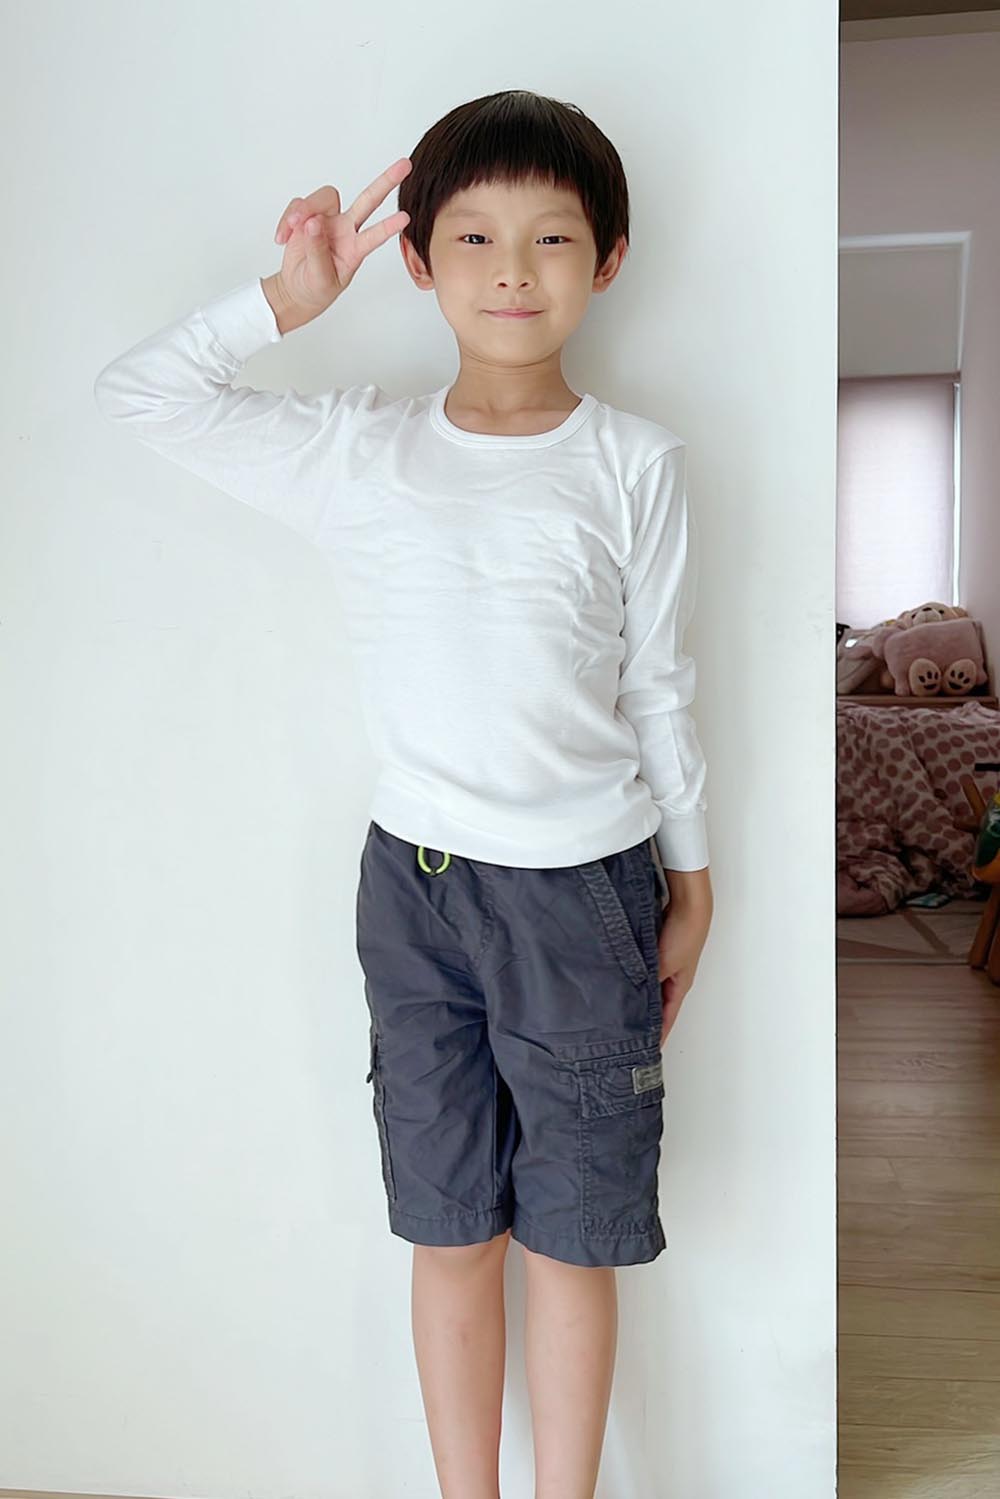 [啾團] 日本Gunze讓大人小孩穿上舒服到像沒穿的內衣褲,雙重保水潤膚減壓無鋼圈內衣+日本兒童內衣褲